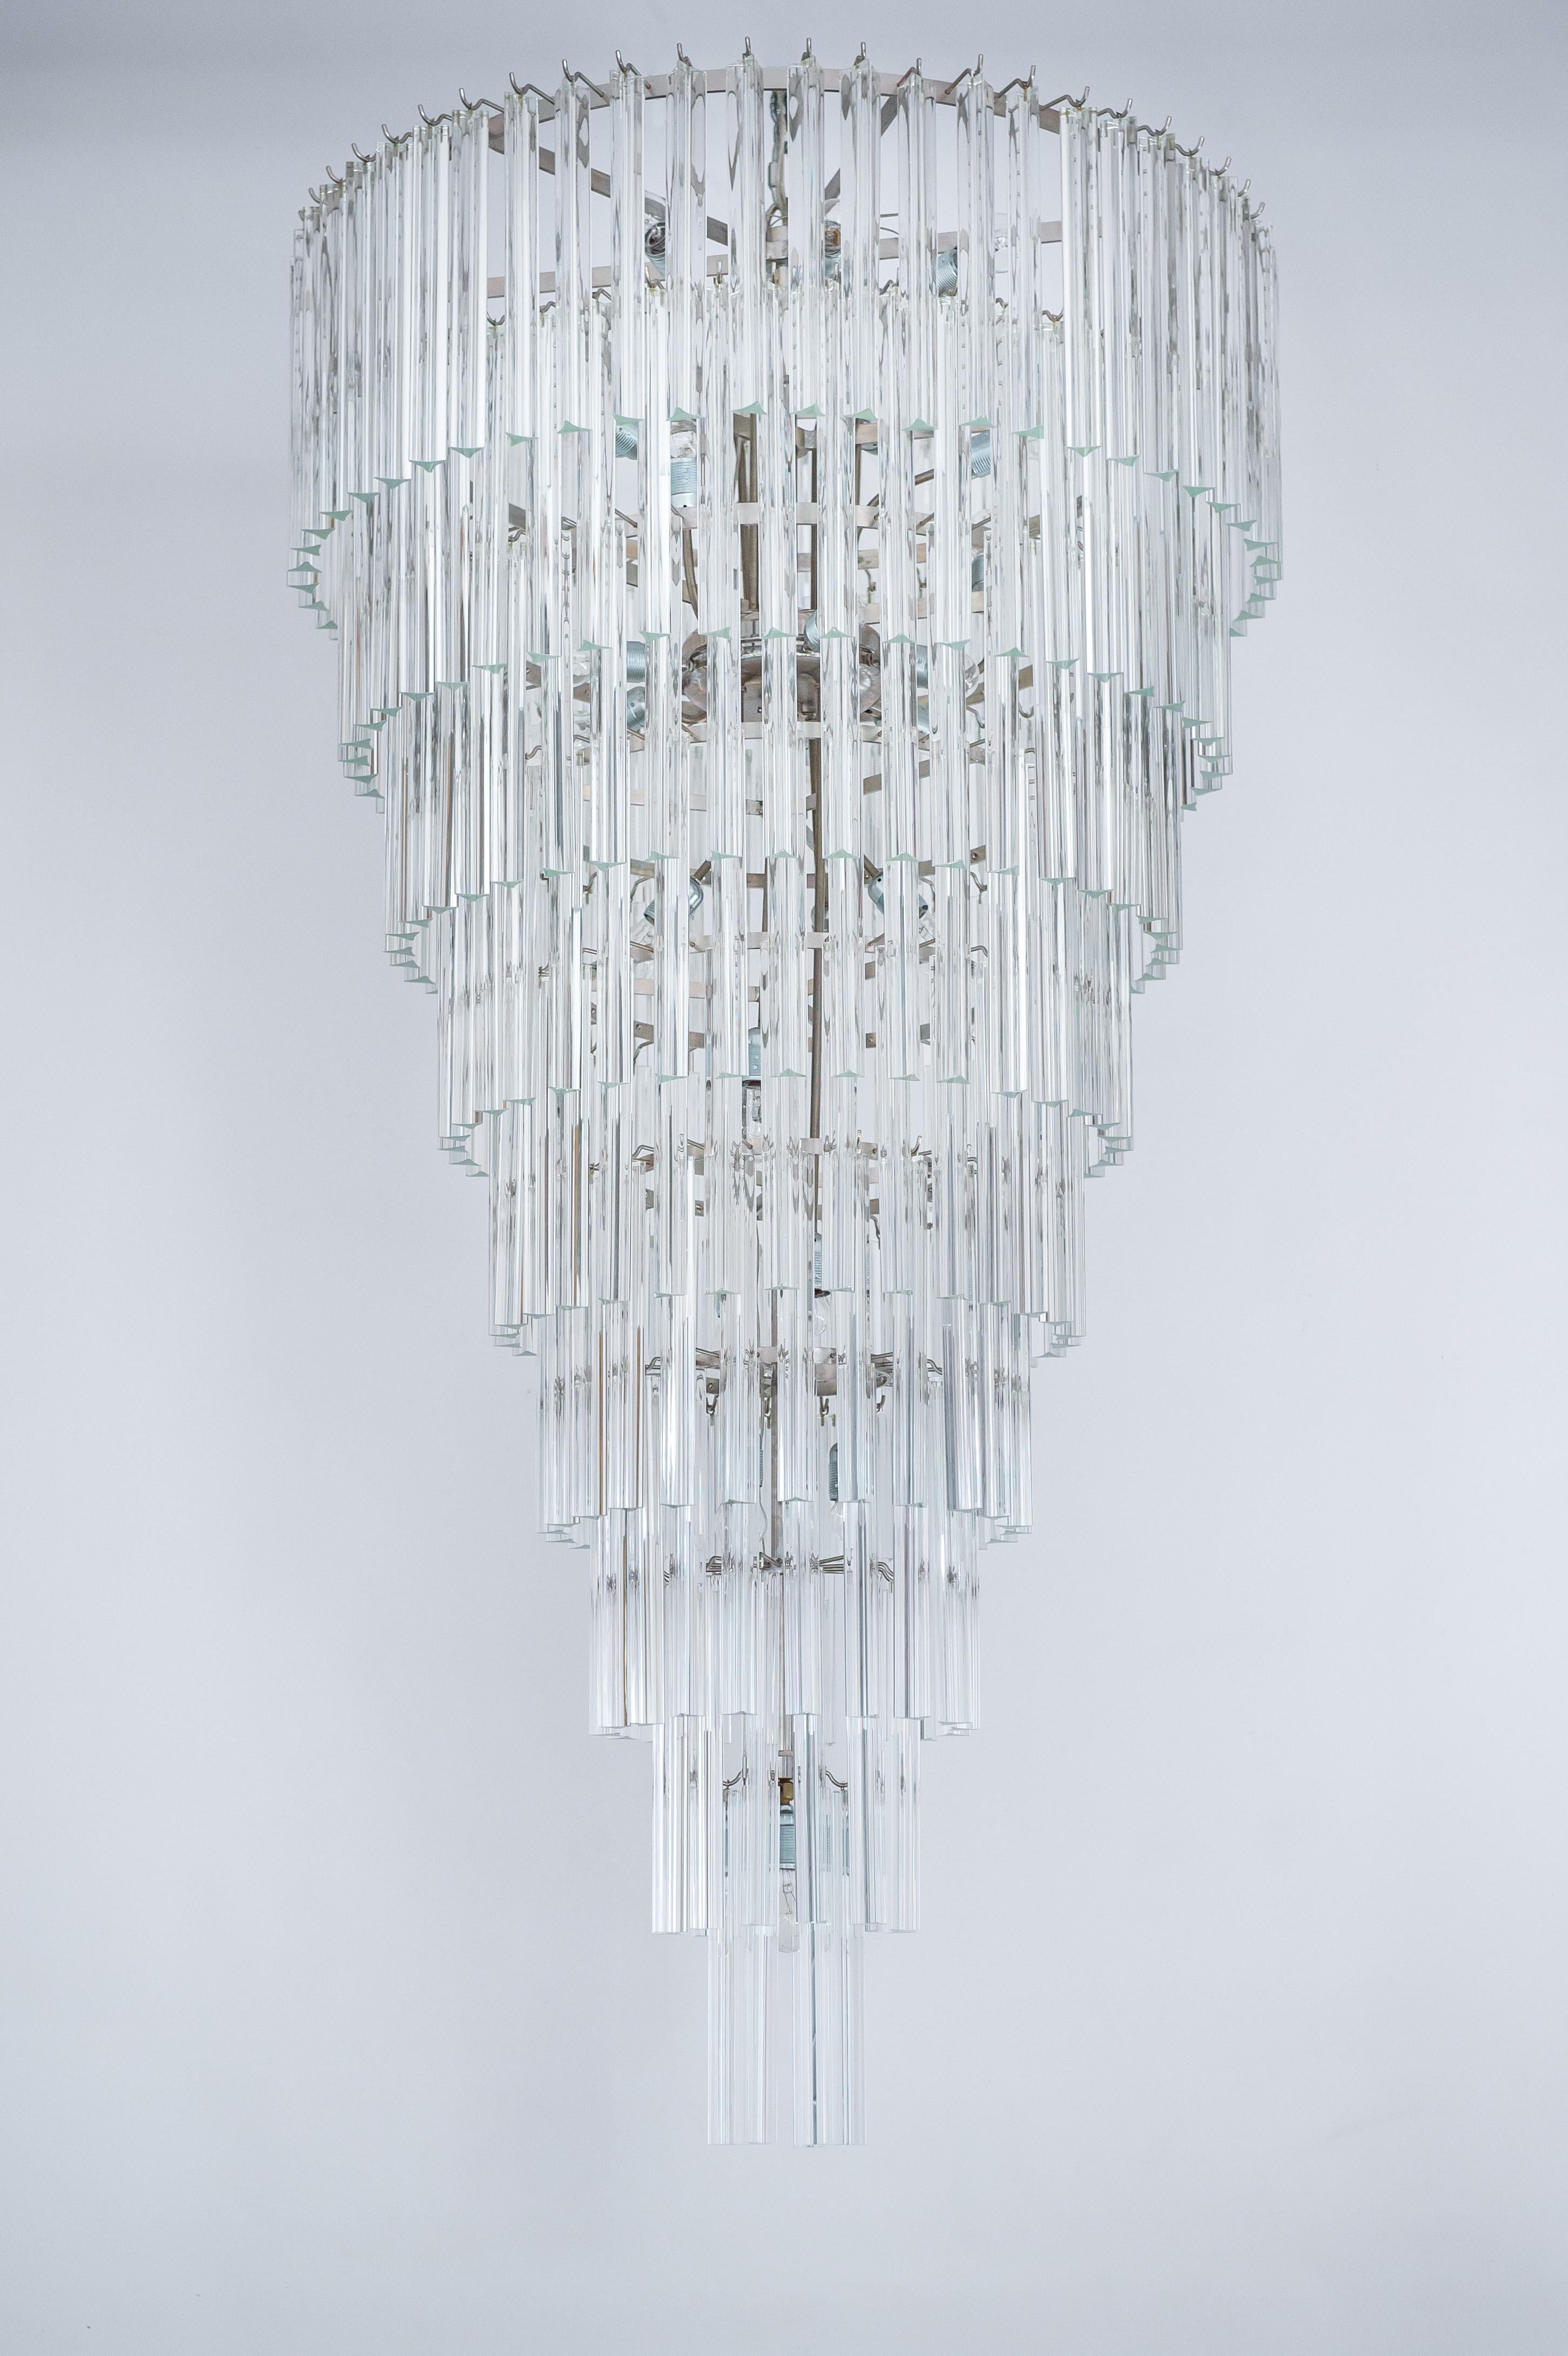 transparenter Kegel-Kronleuchter aus Muranoglas des 21. Jahrhunderts, hergestellt in Venedig.
Dieser außergewöhnliche Kronleuchter bringt einen raffinierten Hauch von Venedig in sich, durch seine elegante Form und seine hellen Lichter, die das